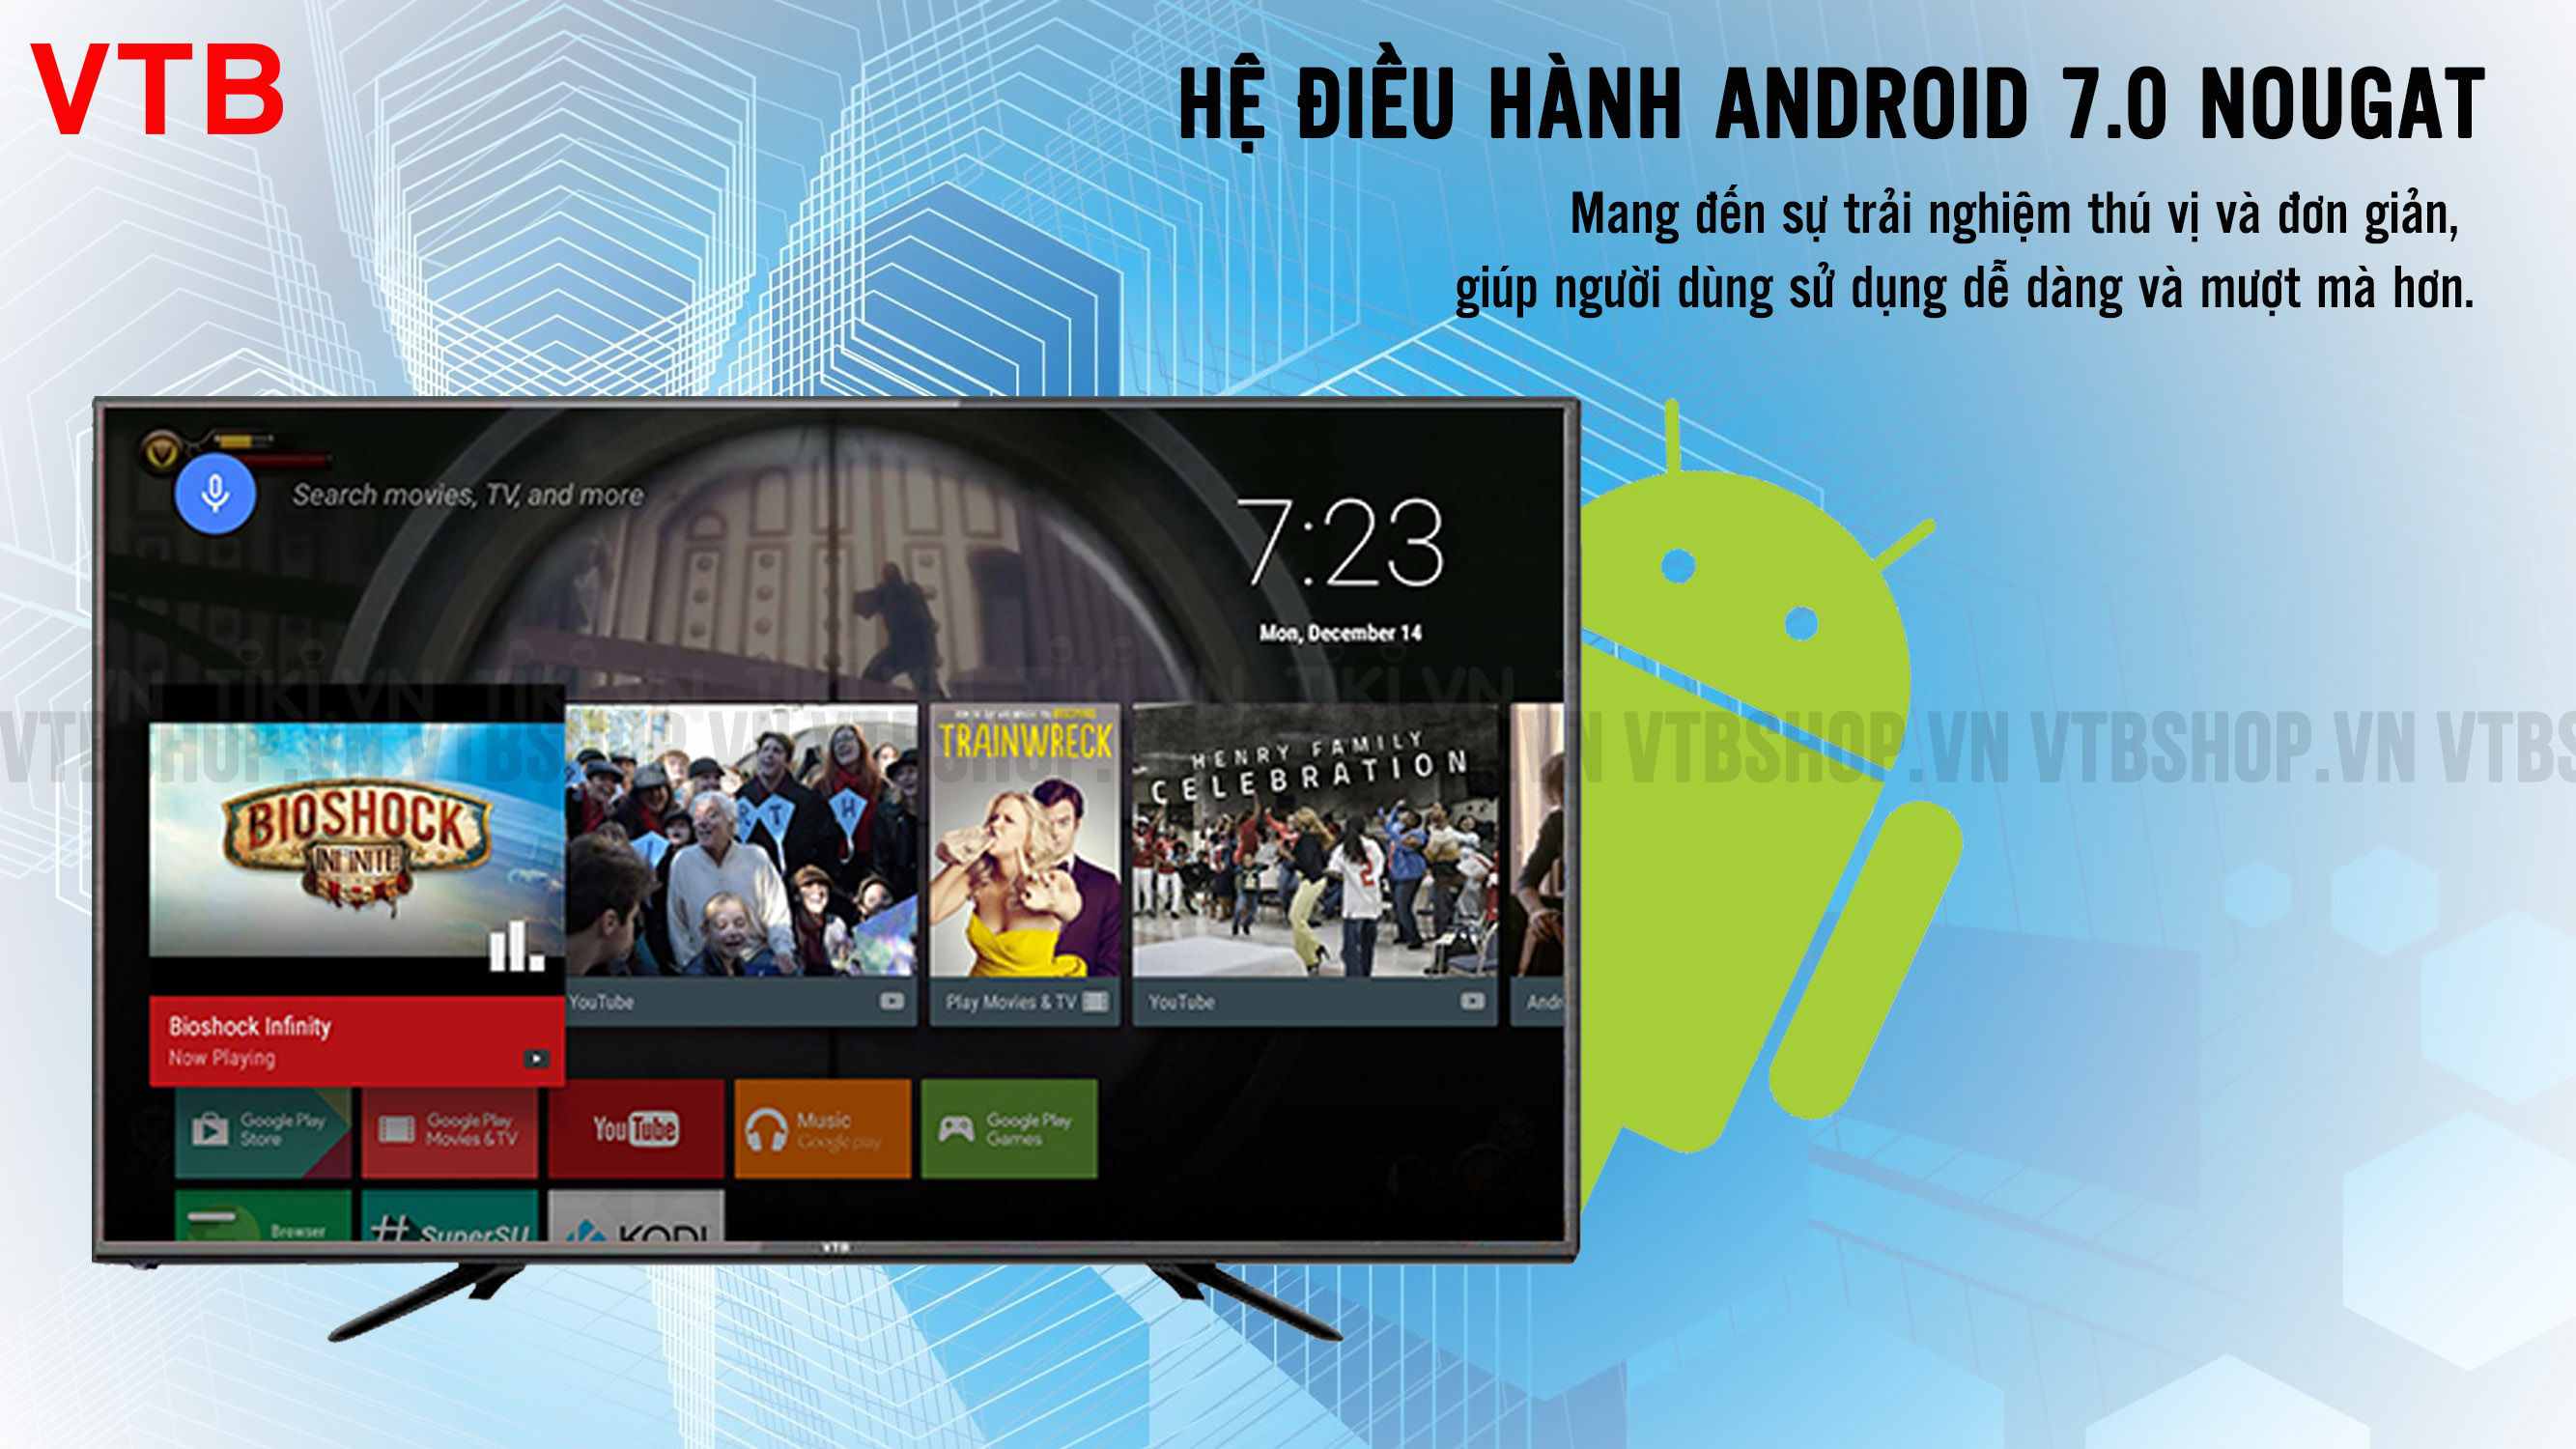 Hệ điều hành Android 7.0 trên smart tivi VTB – Kho ứng dụng phong phú cho người dùng